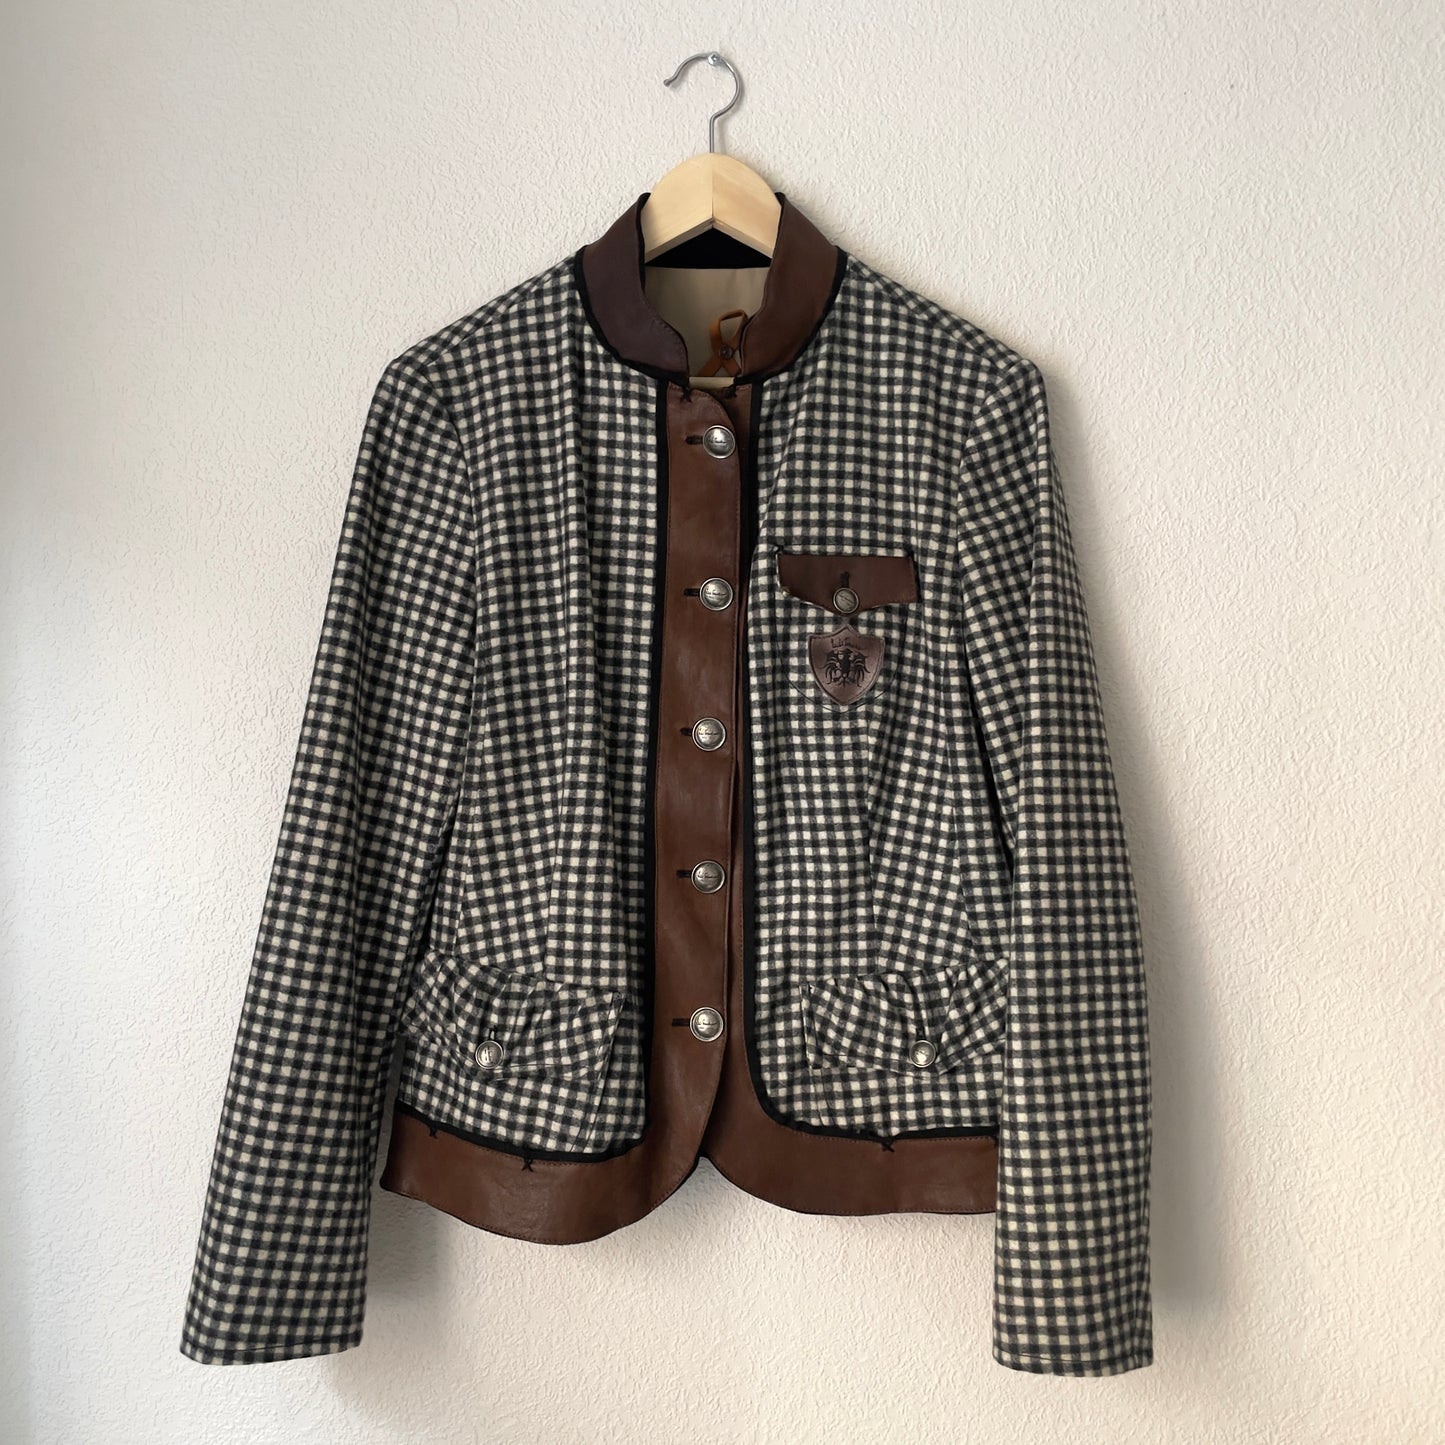 Gingham Check Wool Jacket - Luis Trenker